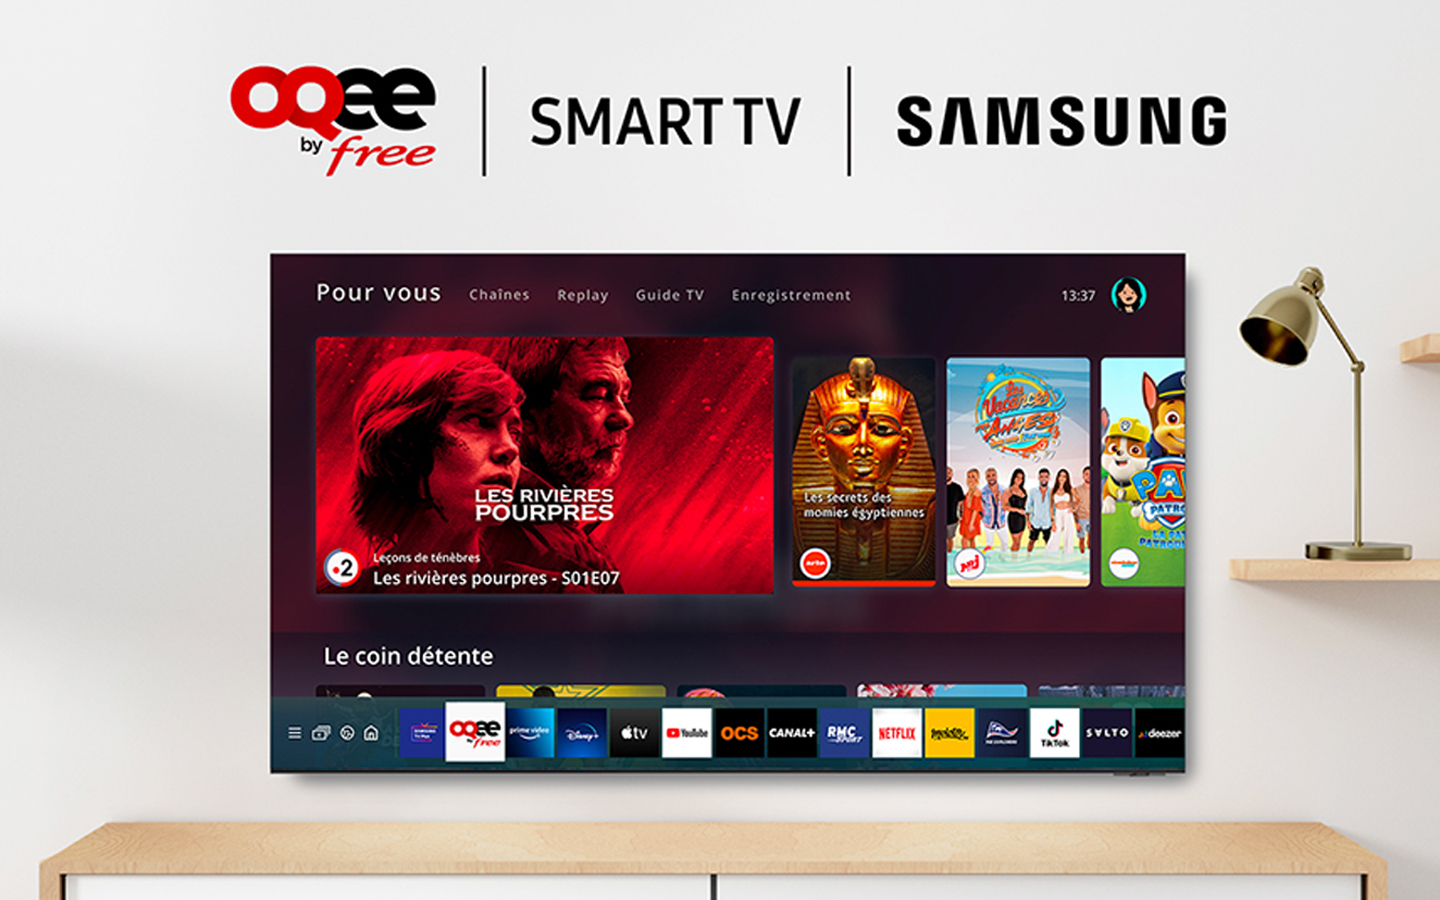 L'app TV OQEE by Free désormais dispo sur les smart TV Samsung (pour les abonnés Pop et Delta)